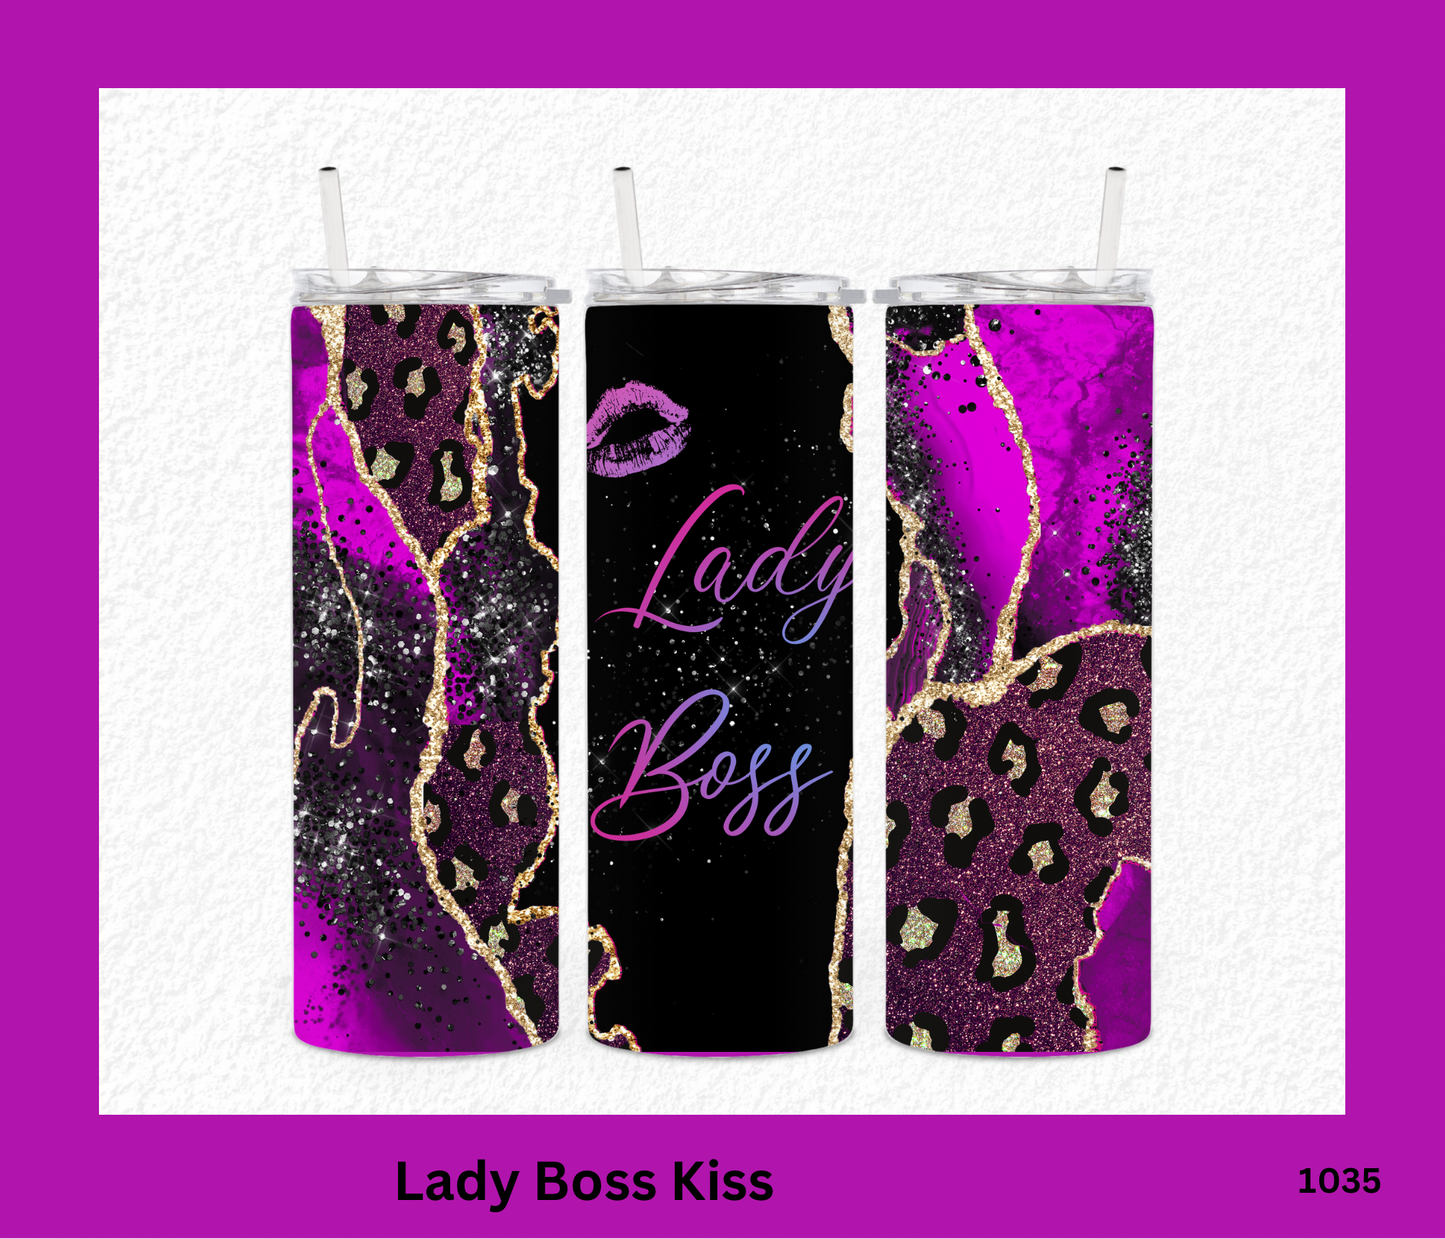 Lady Boss Kiss